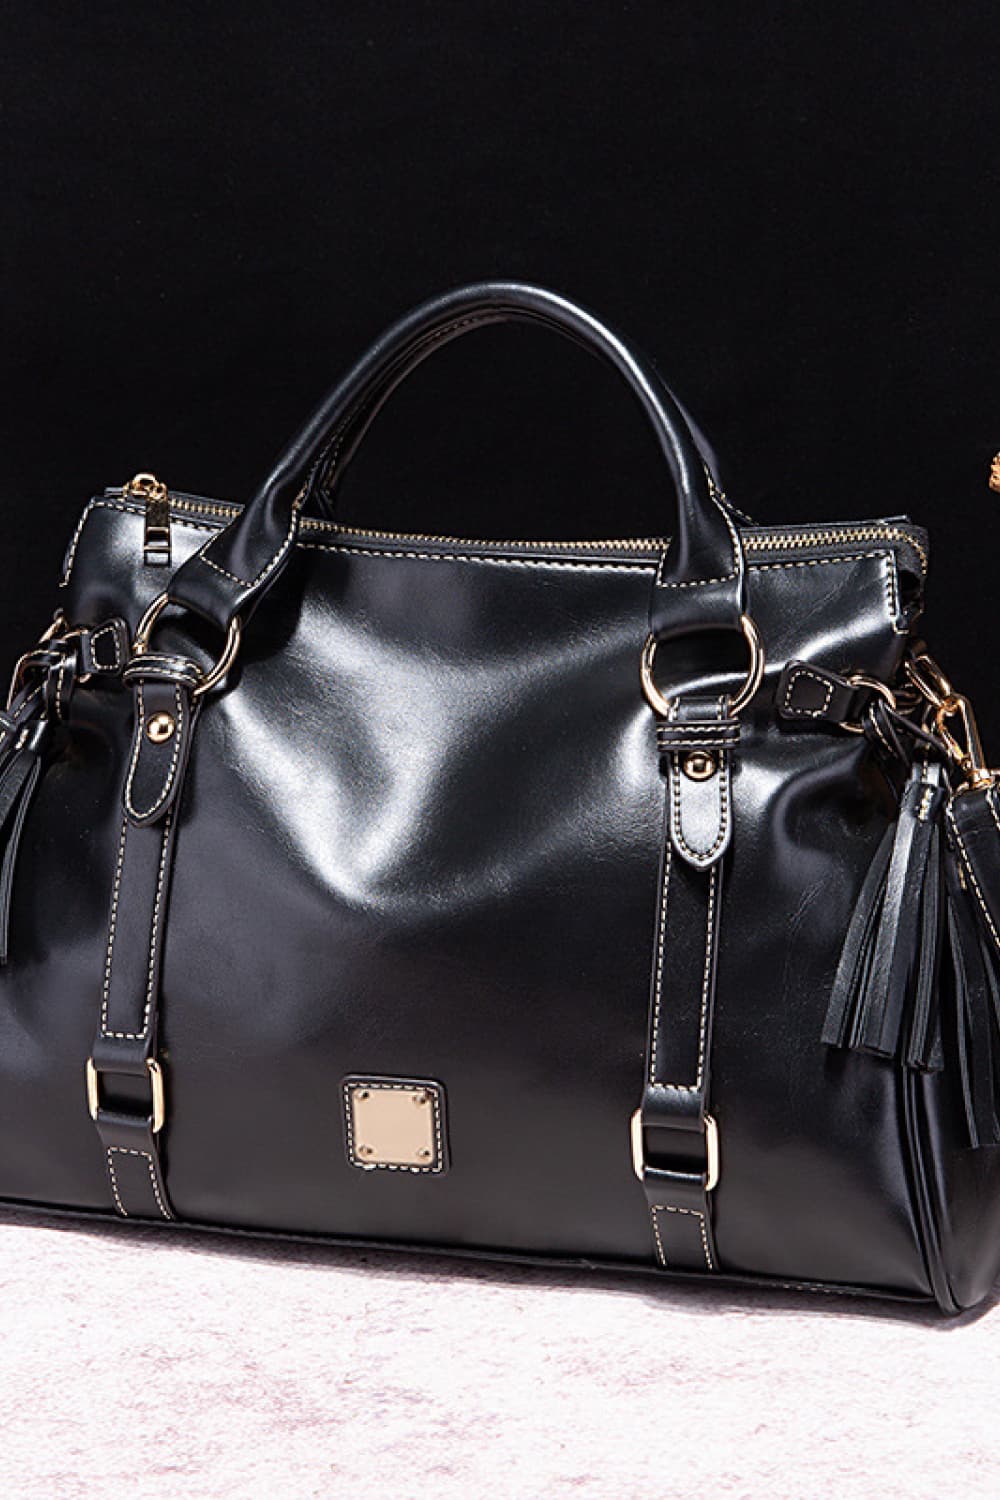 PU Leather Handbag with Tassels myETYN